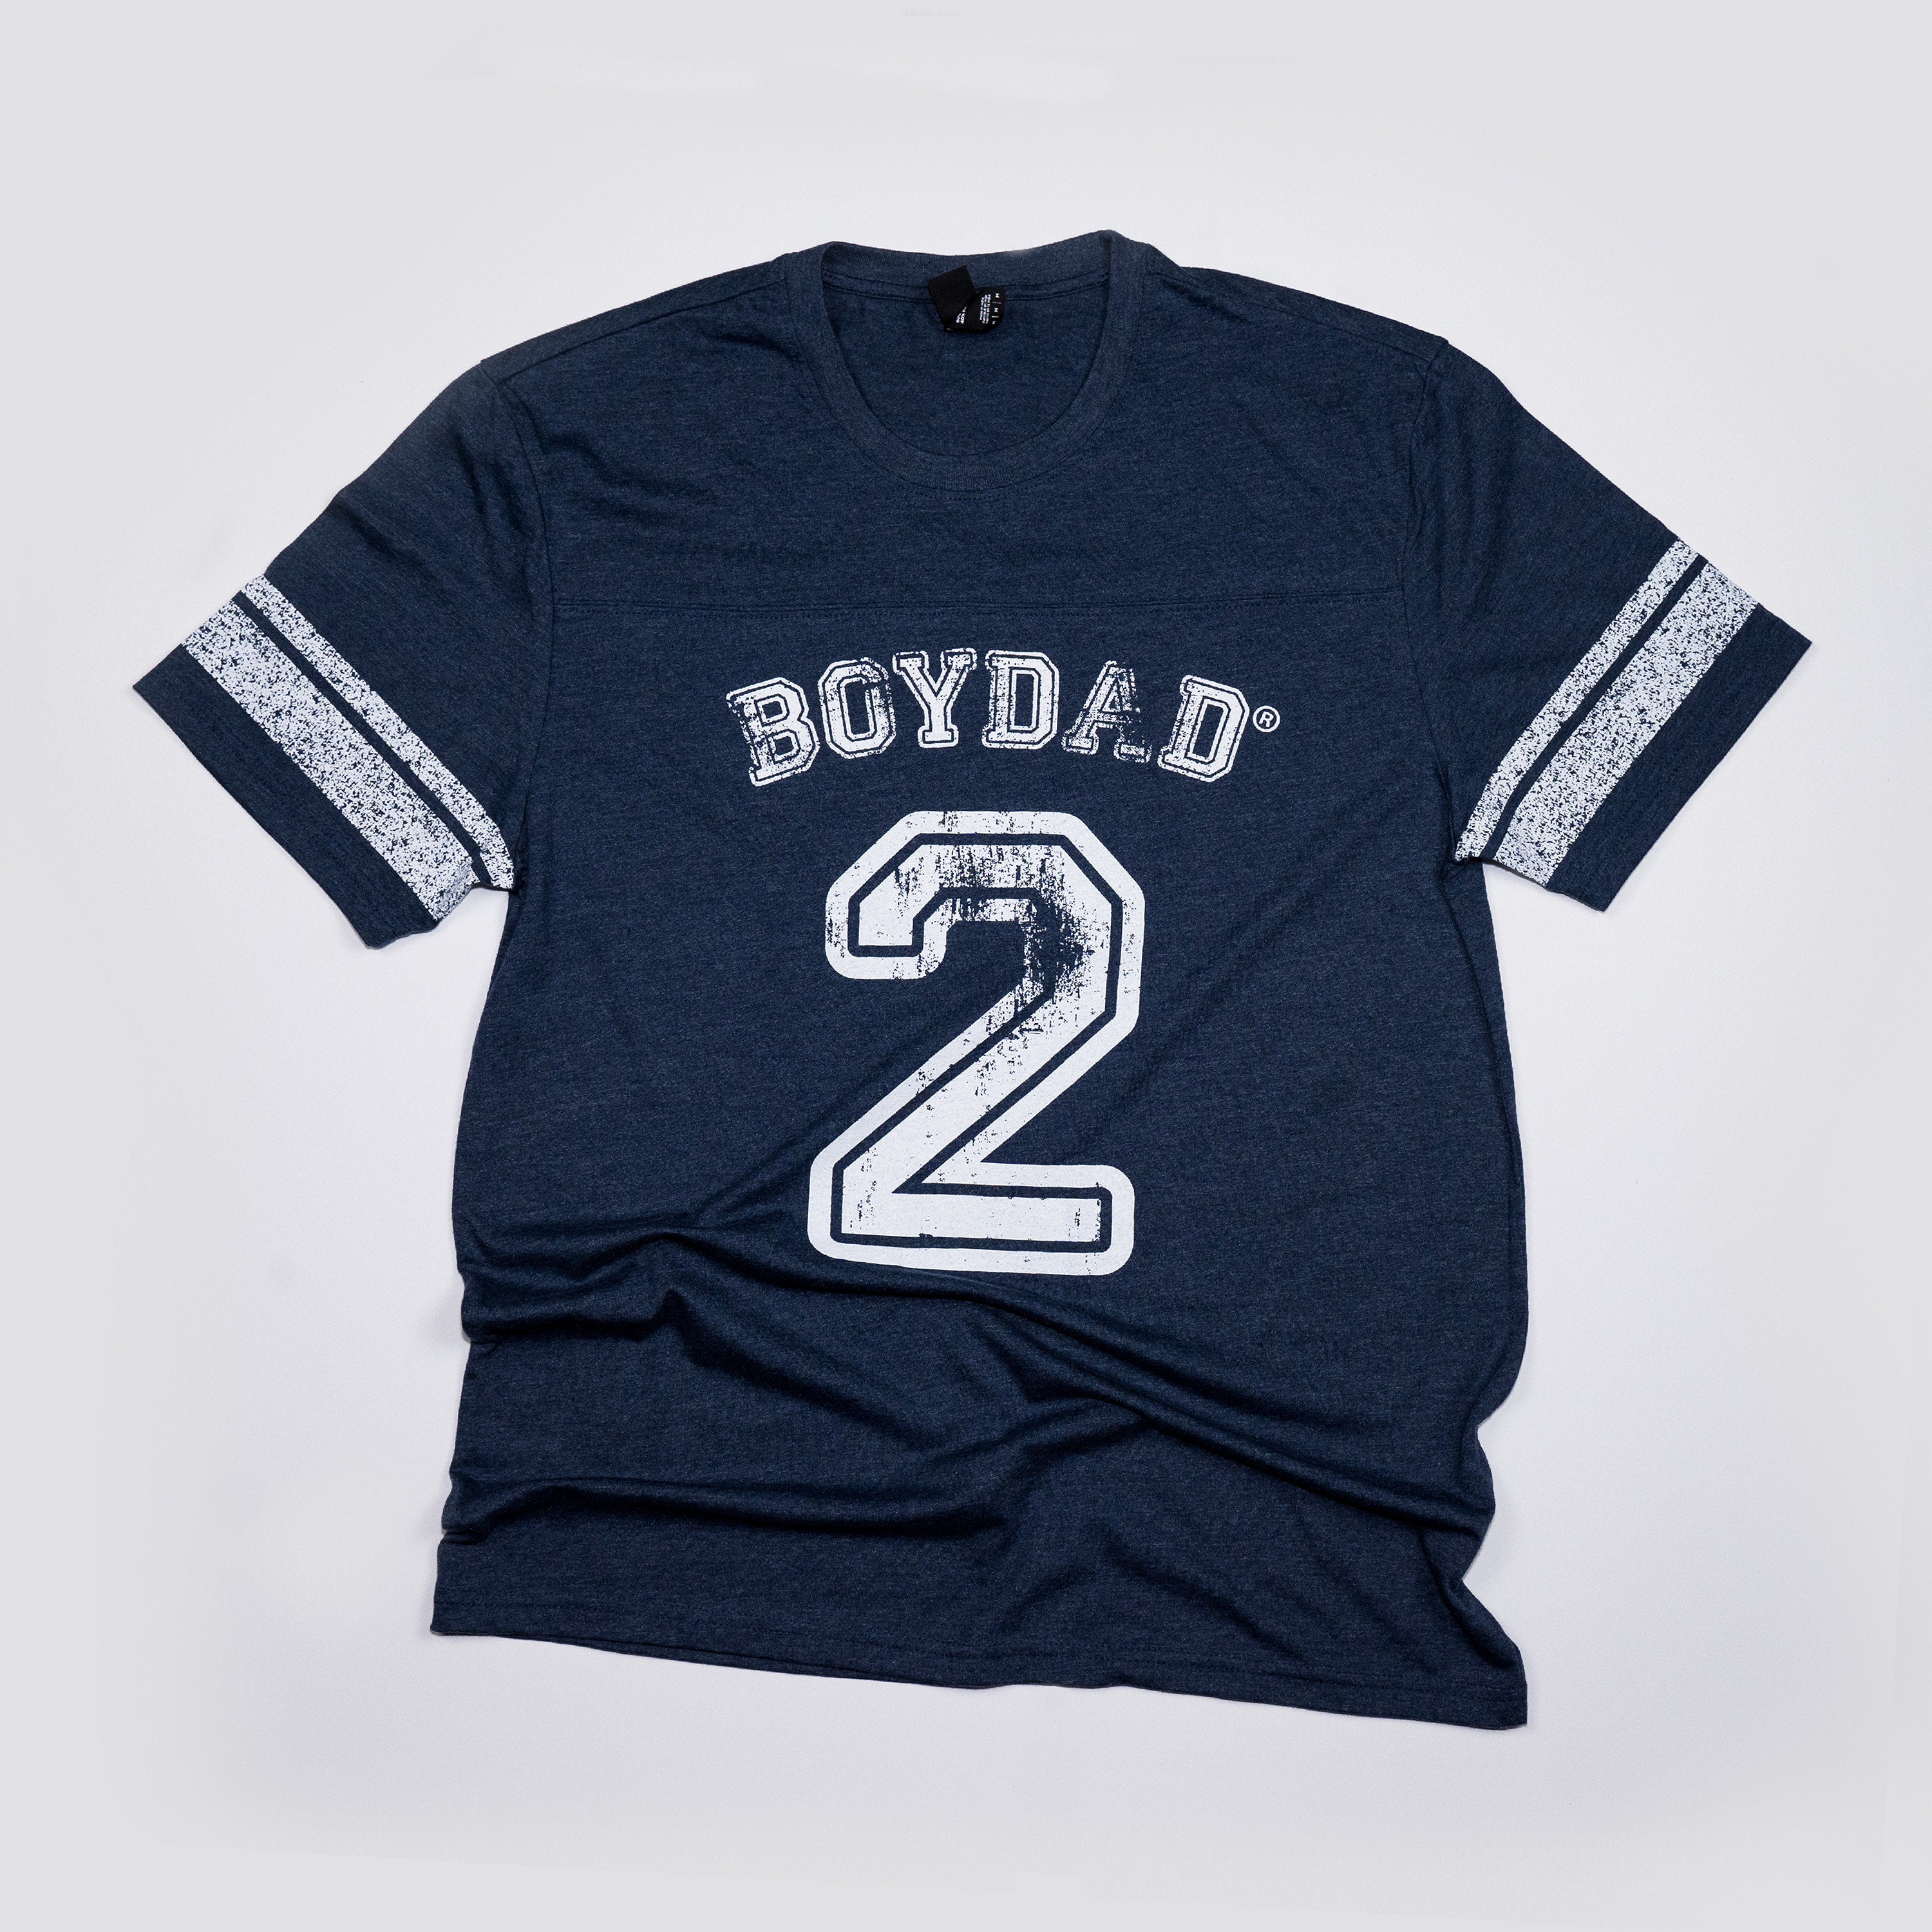 Boydad® 2 Game Tee